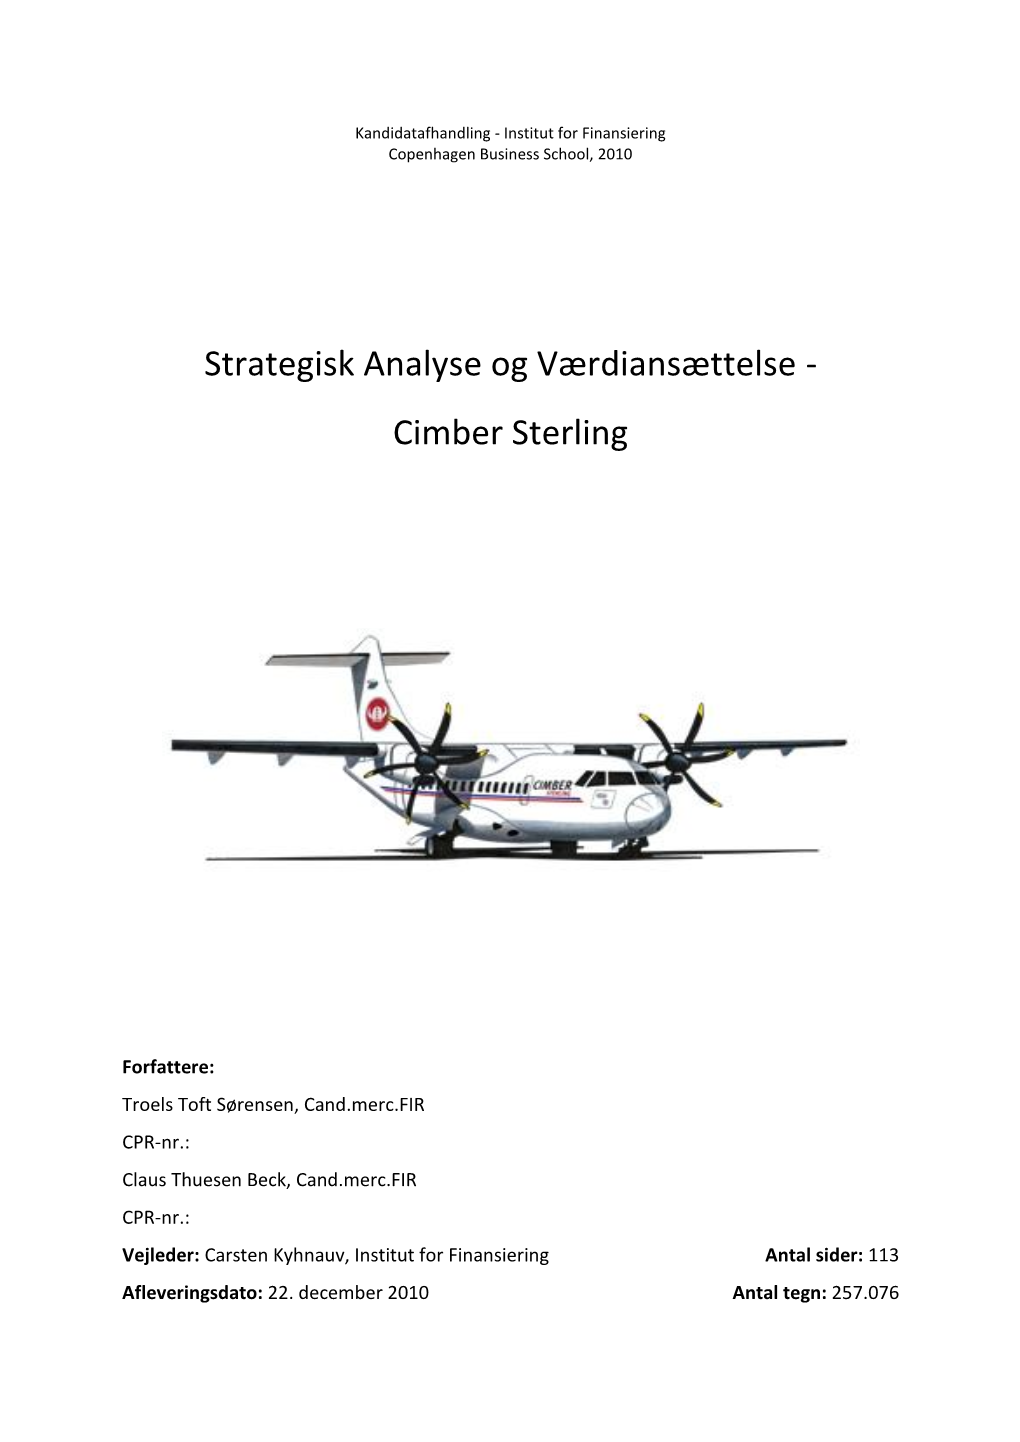 Strategisk Analyse Og Værdiansættelse - Cimber Sterling